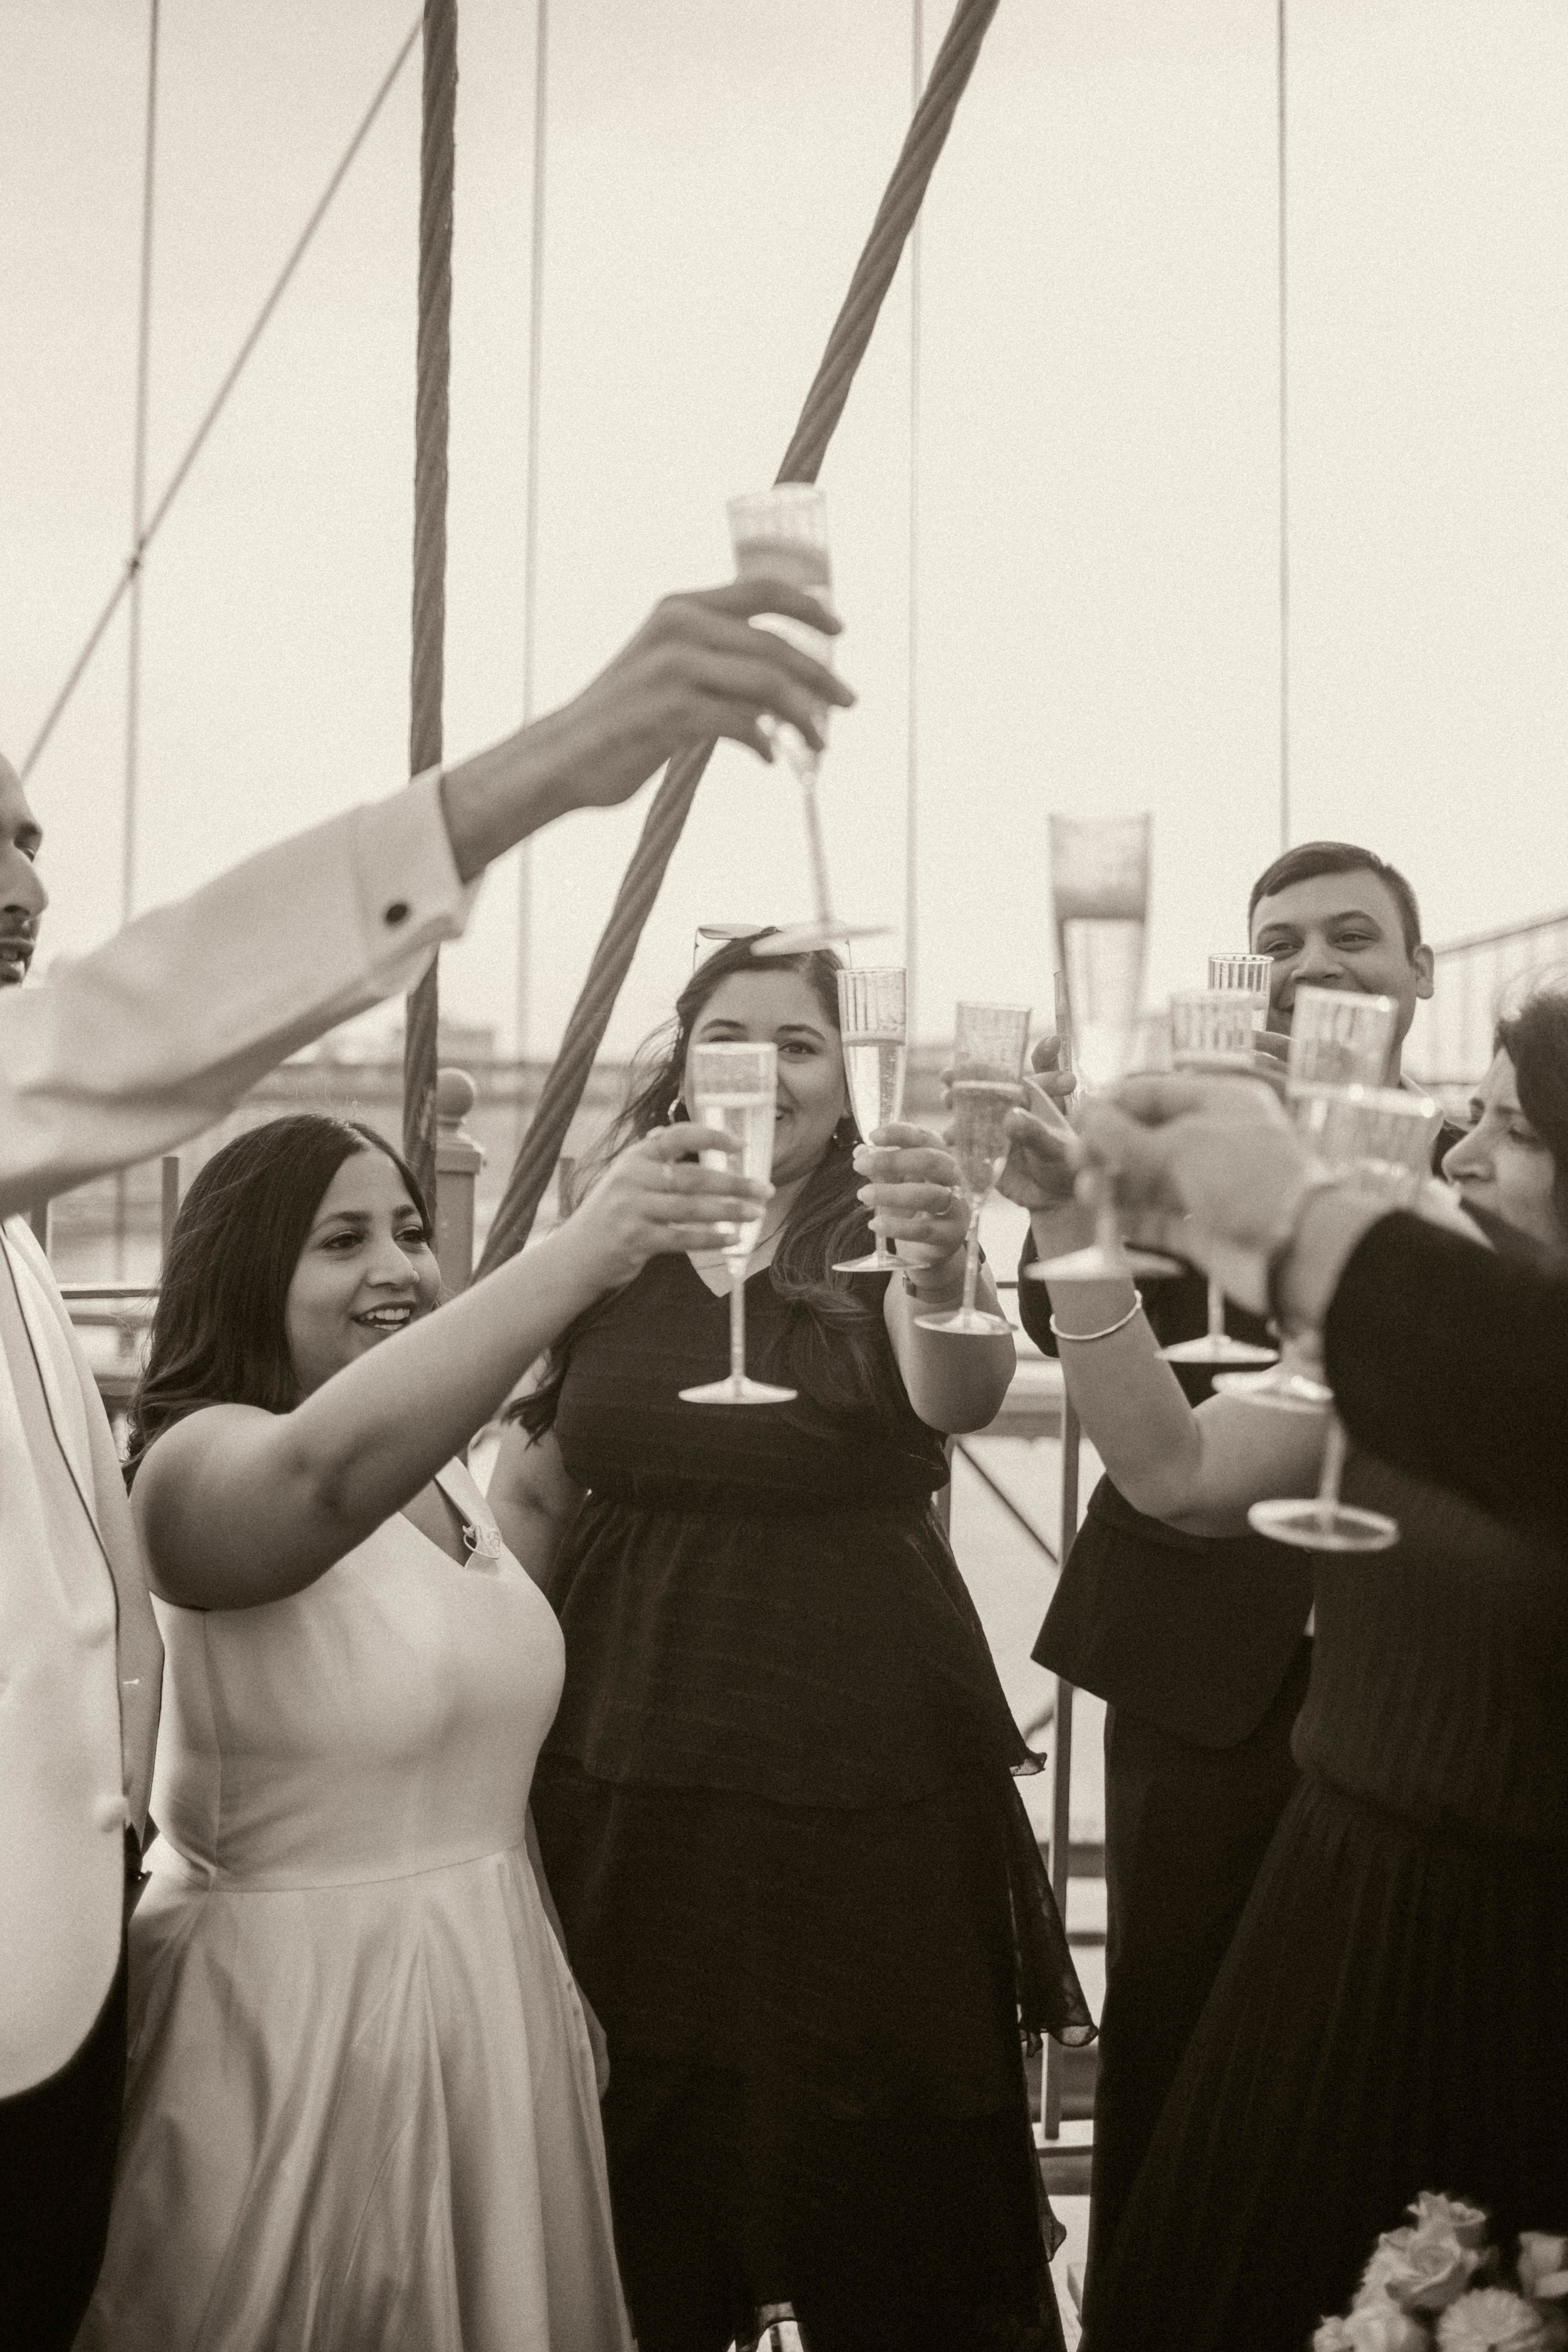 A classy wedding toast on the brooklyn bridge